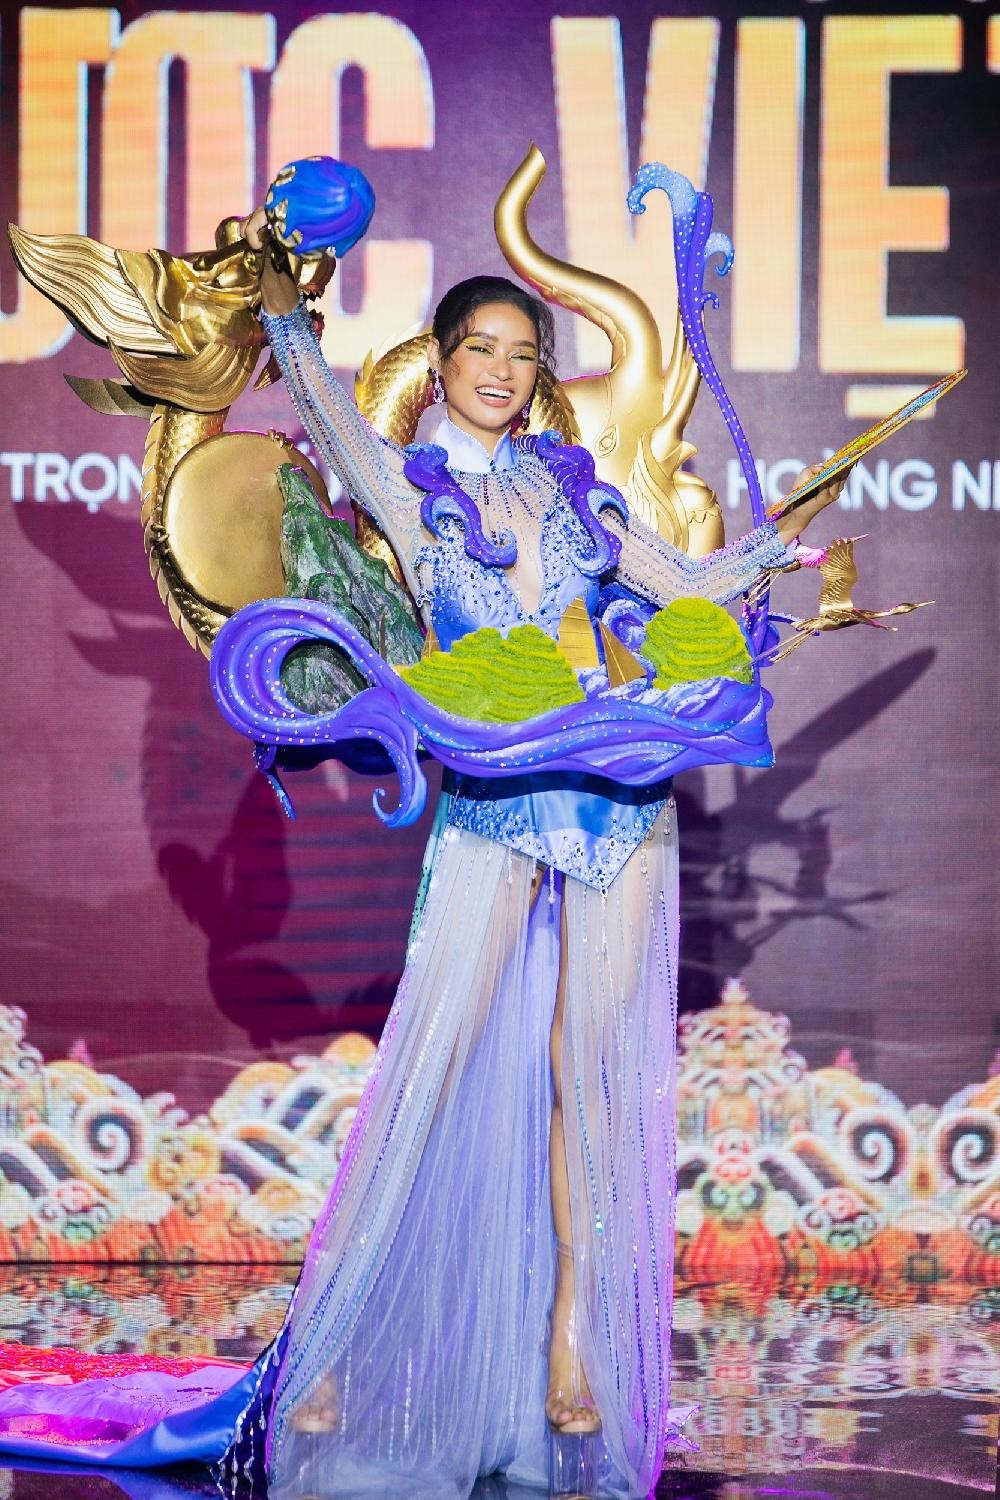 Thiết kế nào được chọn làm Trang phục Dân tộc cho tân Hoa hậu Hoàn vũ Việt Nam? ảnh 10